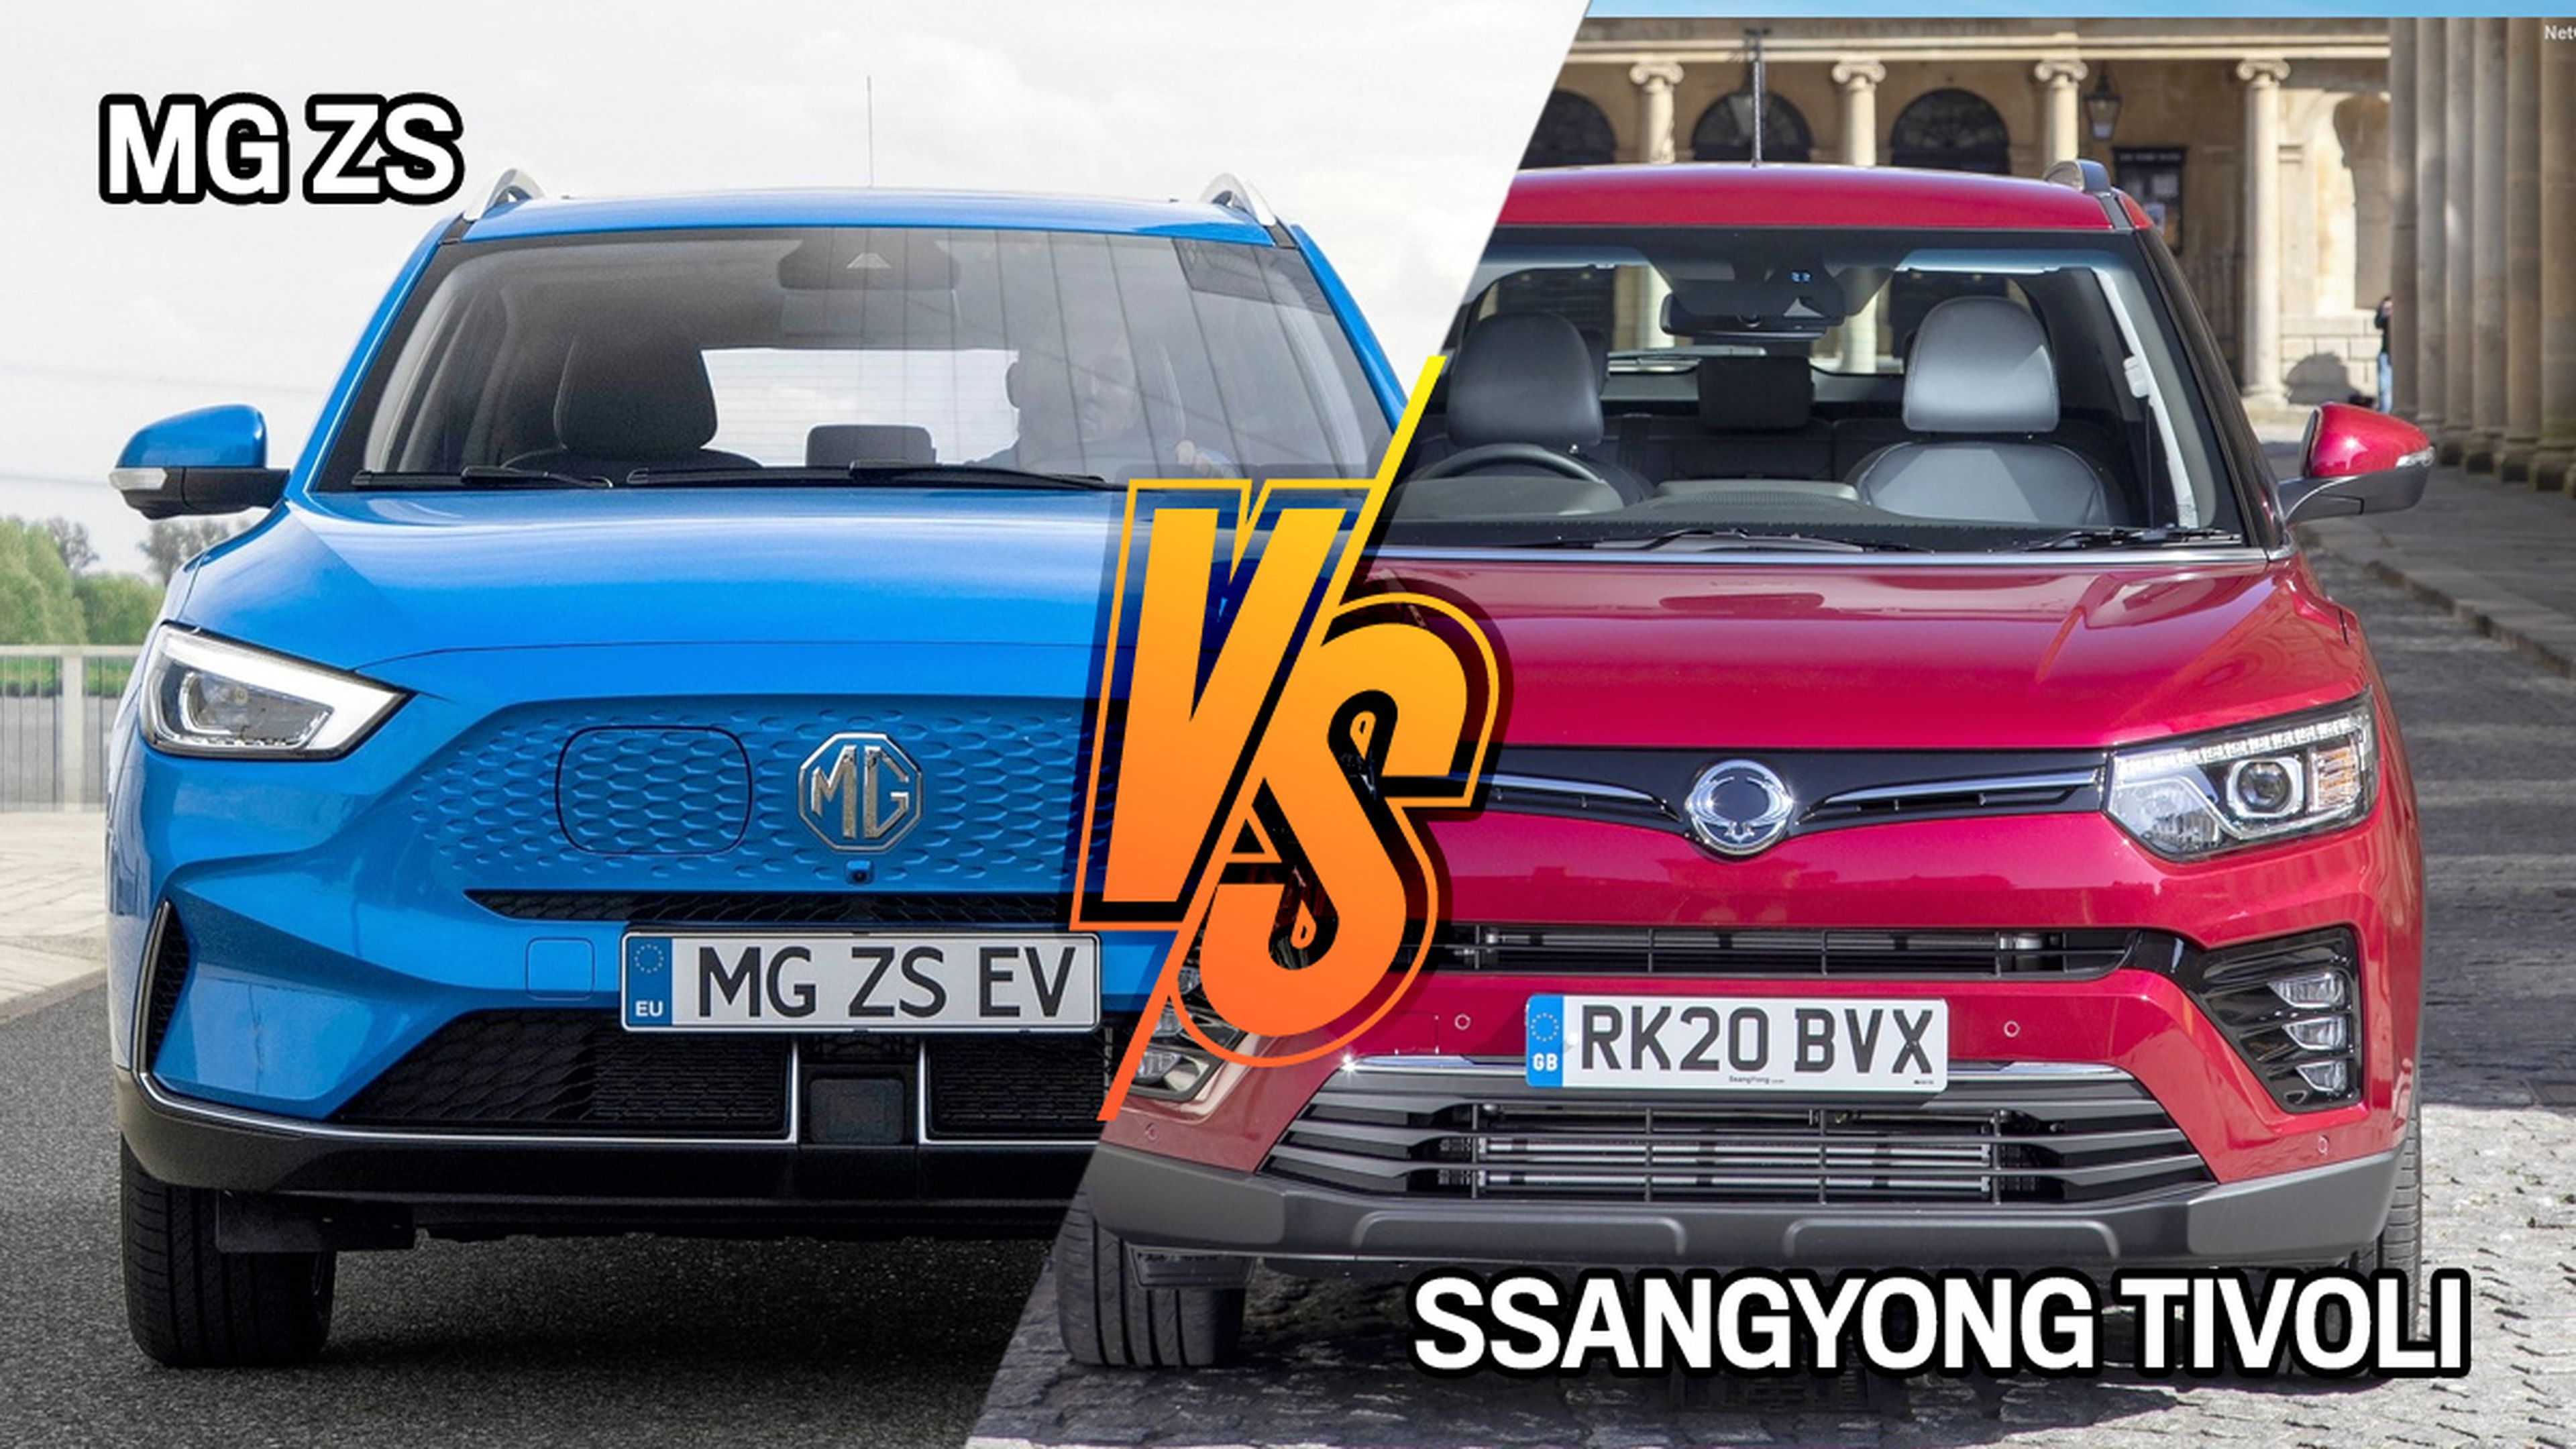 MG ZS o SsangYong Tivoli, ¿cuál es el SUV más barato?